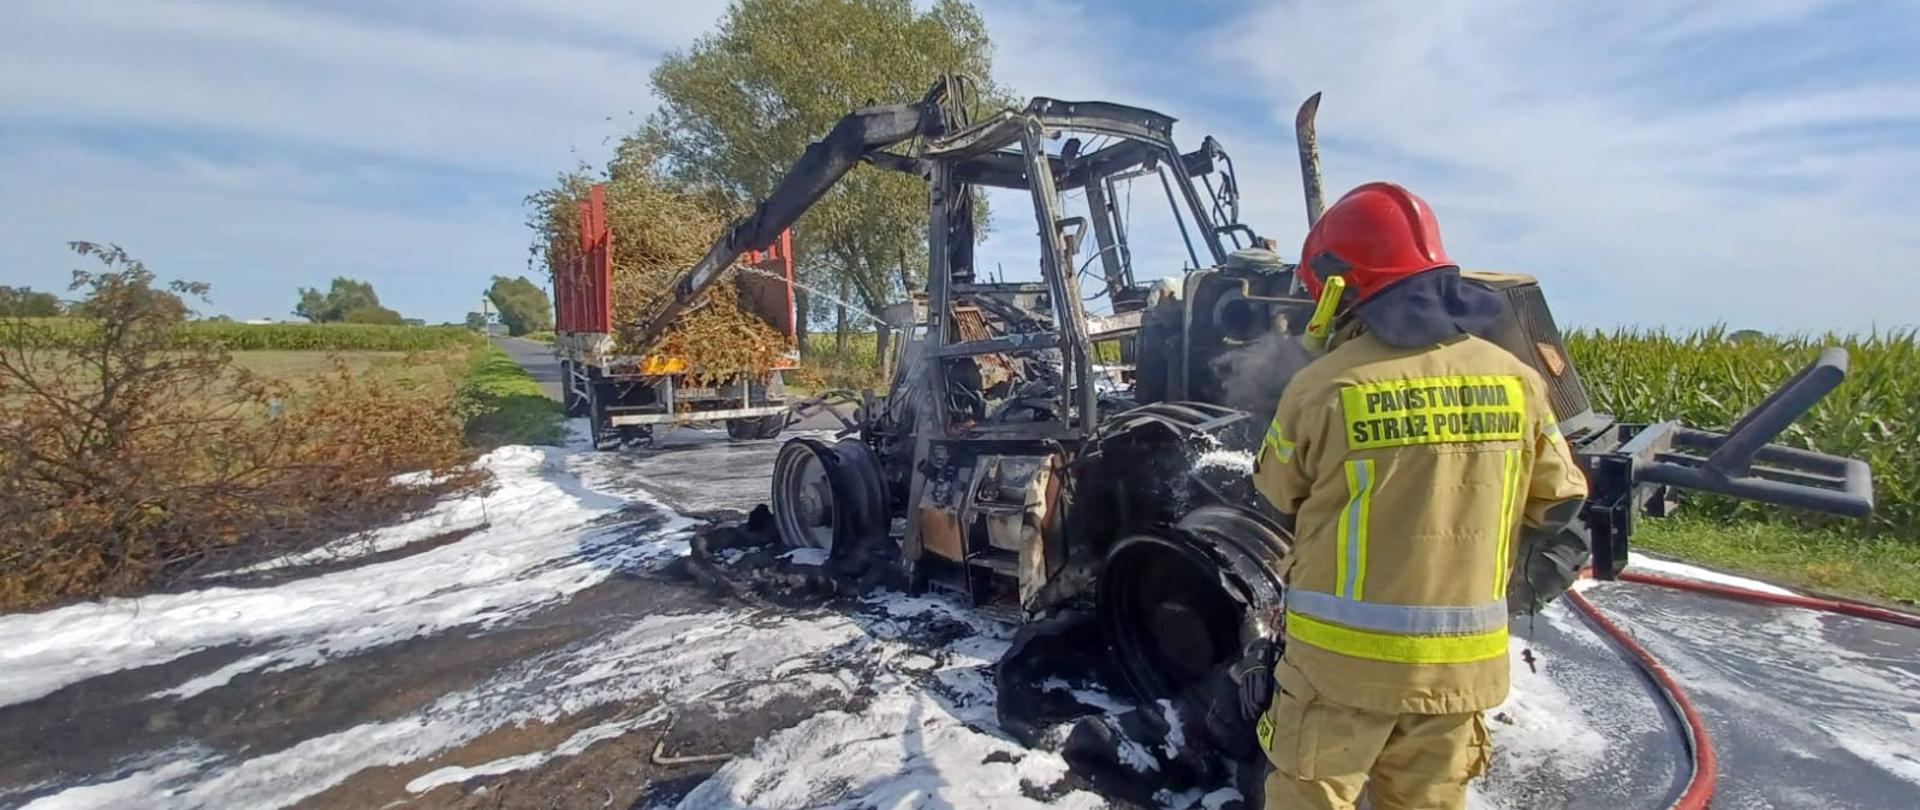 Na zdjęciu widać spalony ciągnik rolniczy oraz strażaka.